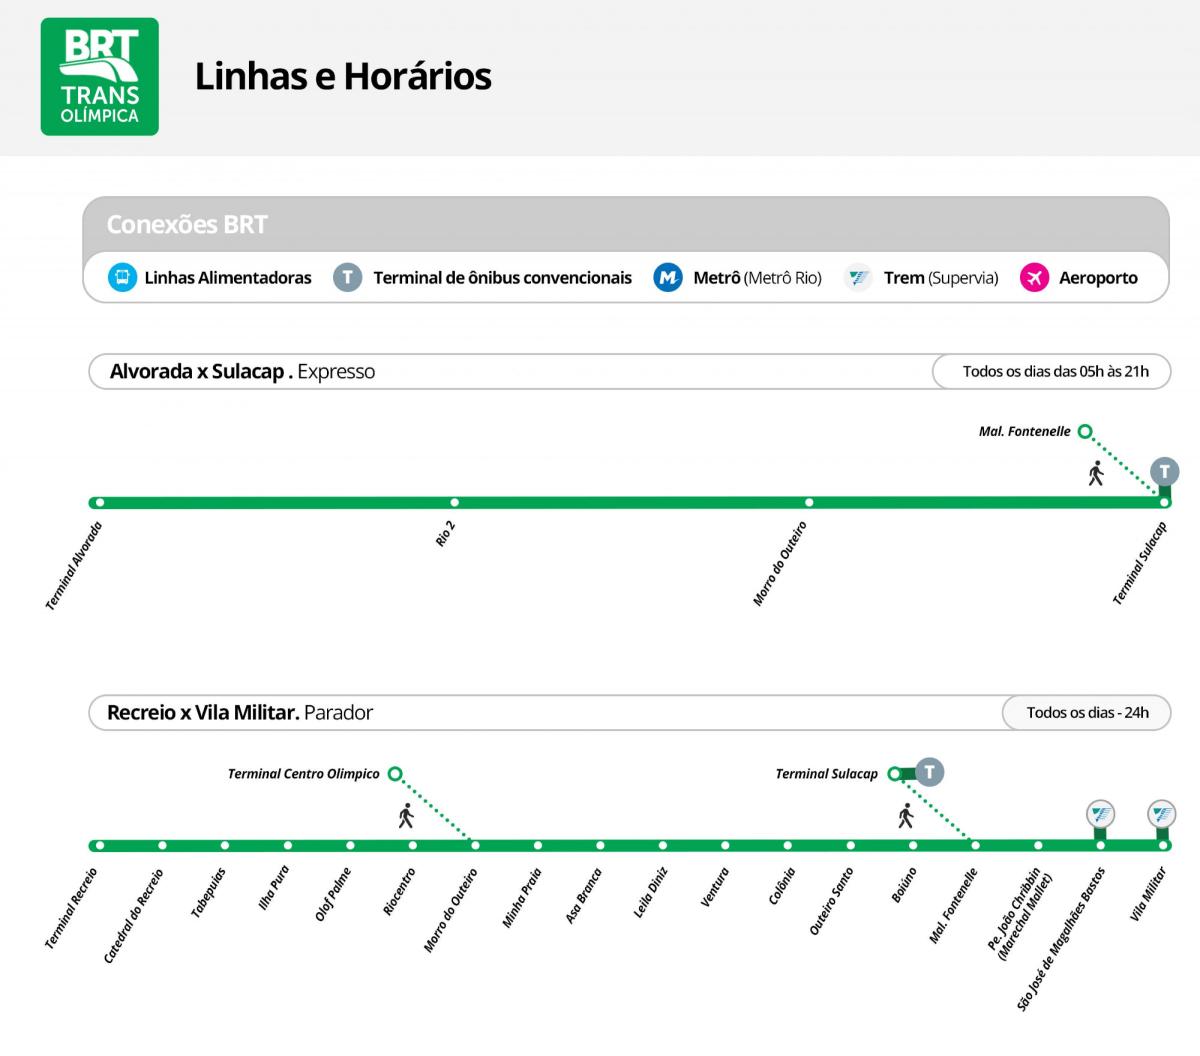 Карта на BRT TransOlimpica - Станици